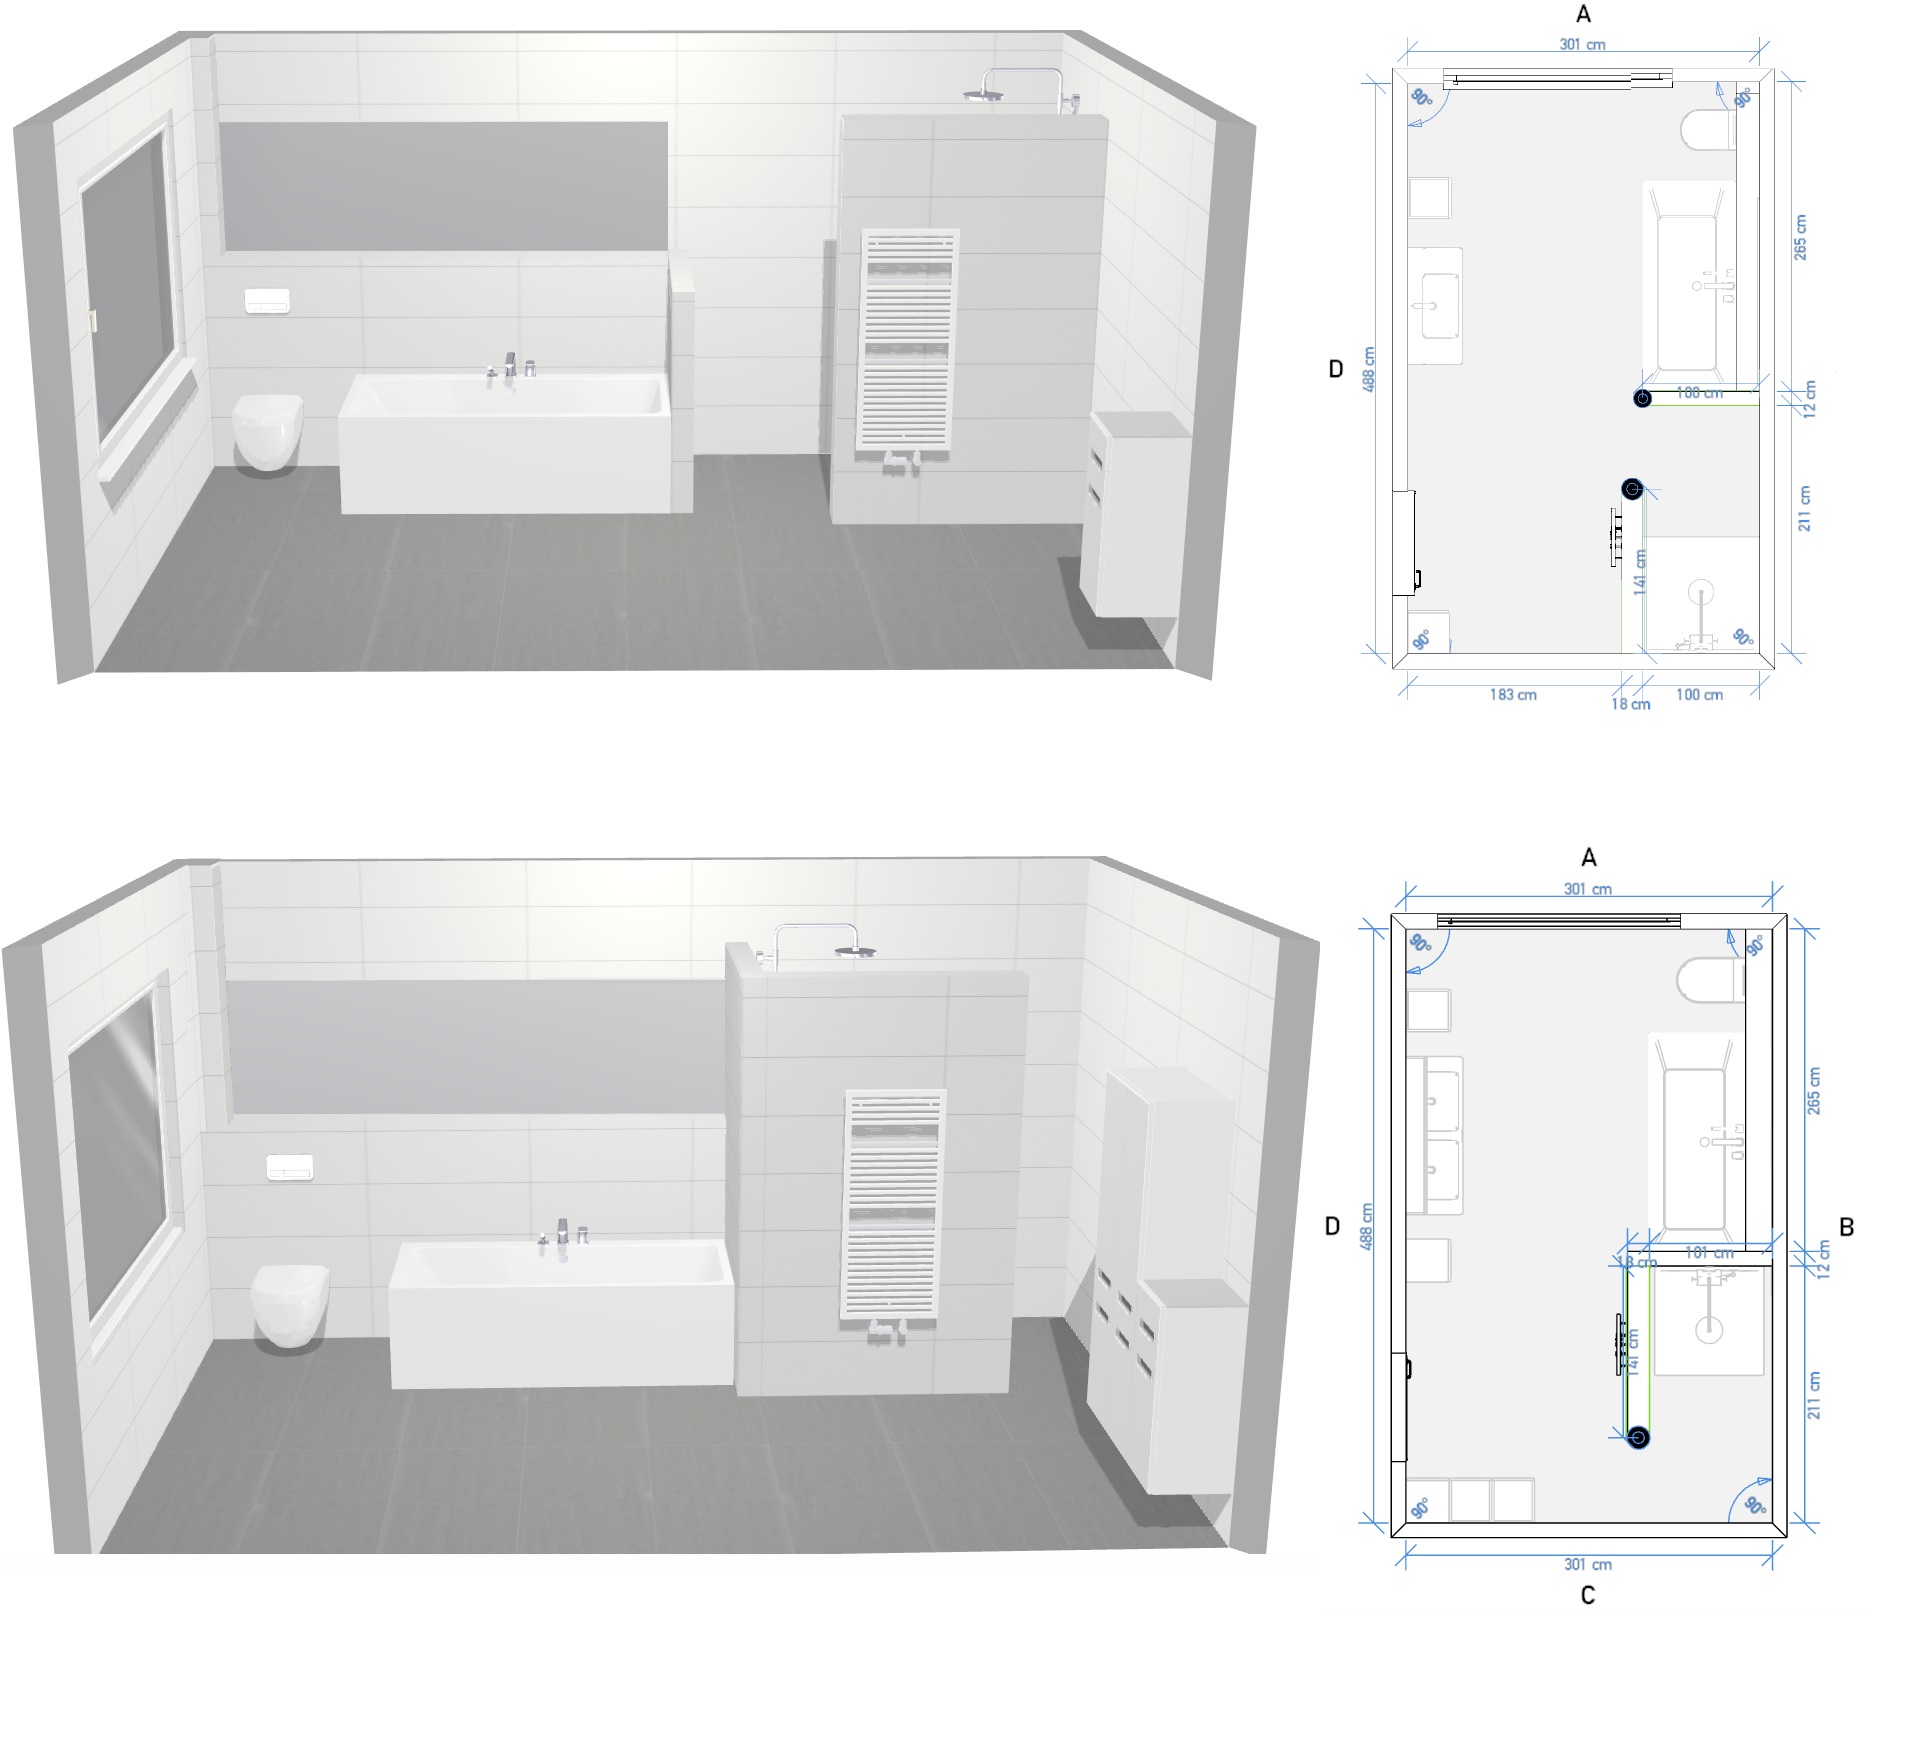 neubau-grundriss-badezimmer-obergeschoss-feedback-254130-1.jpg